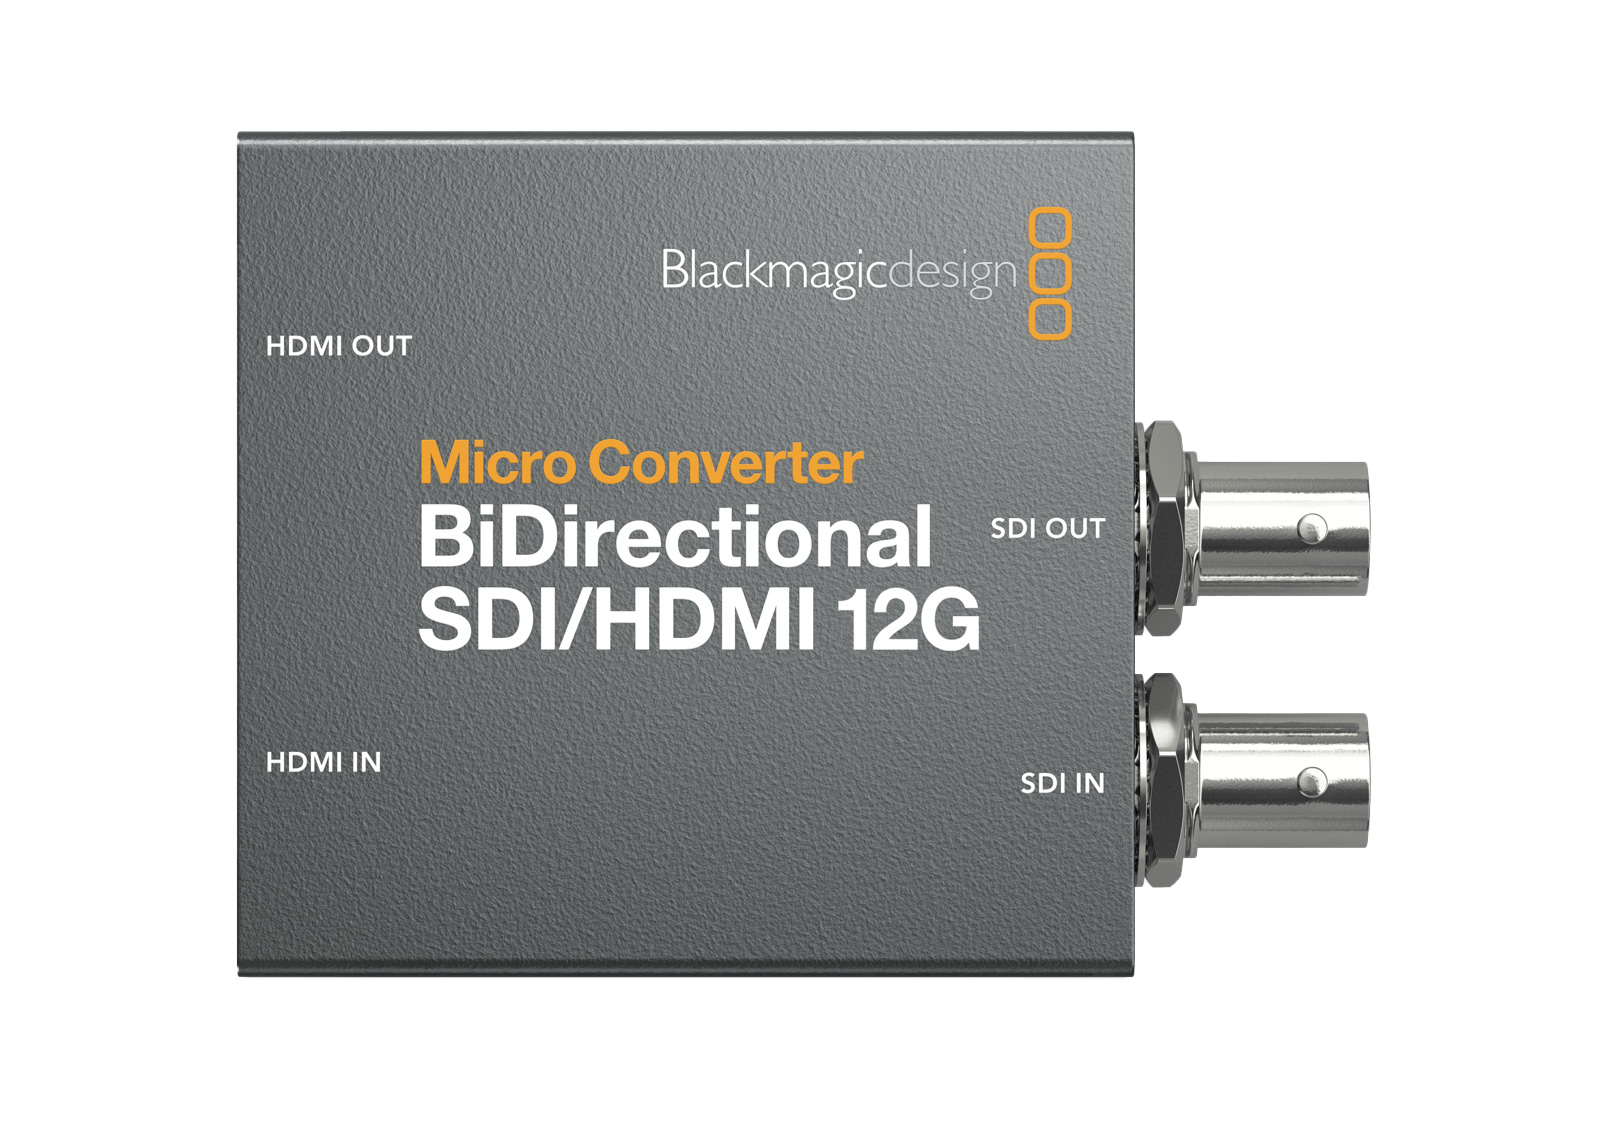 新着レンタル機材の写真,コンバーター,SDI,HDMI,Micro Converter BiDirectional SDI/HDMI 12G,Blackmagicdesign